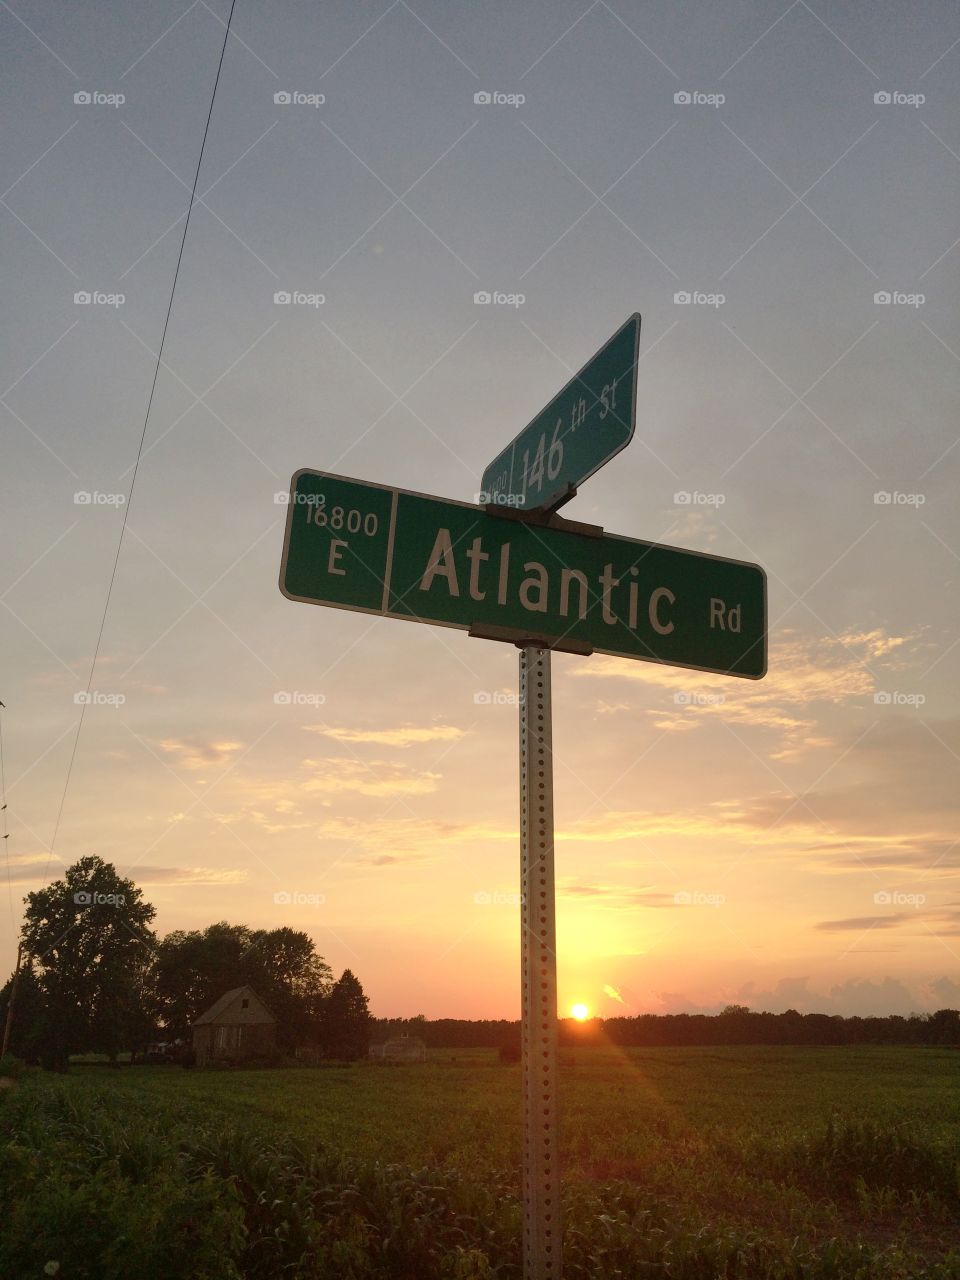 Atlantic. Taken in Noblesville Indiana in July 